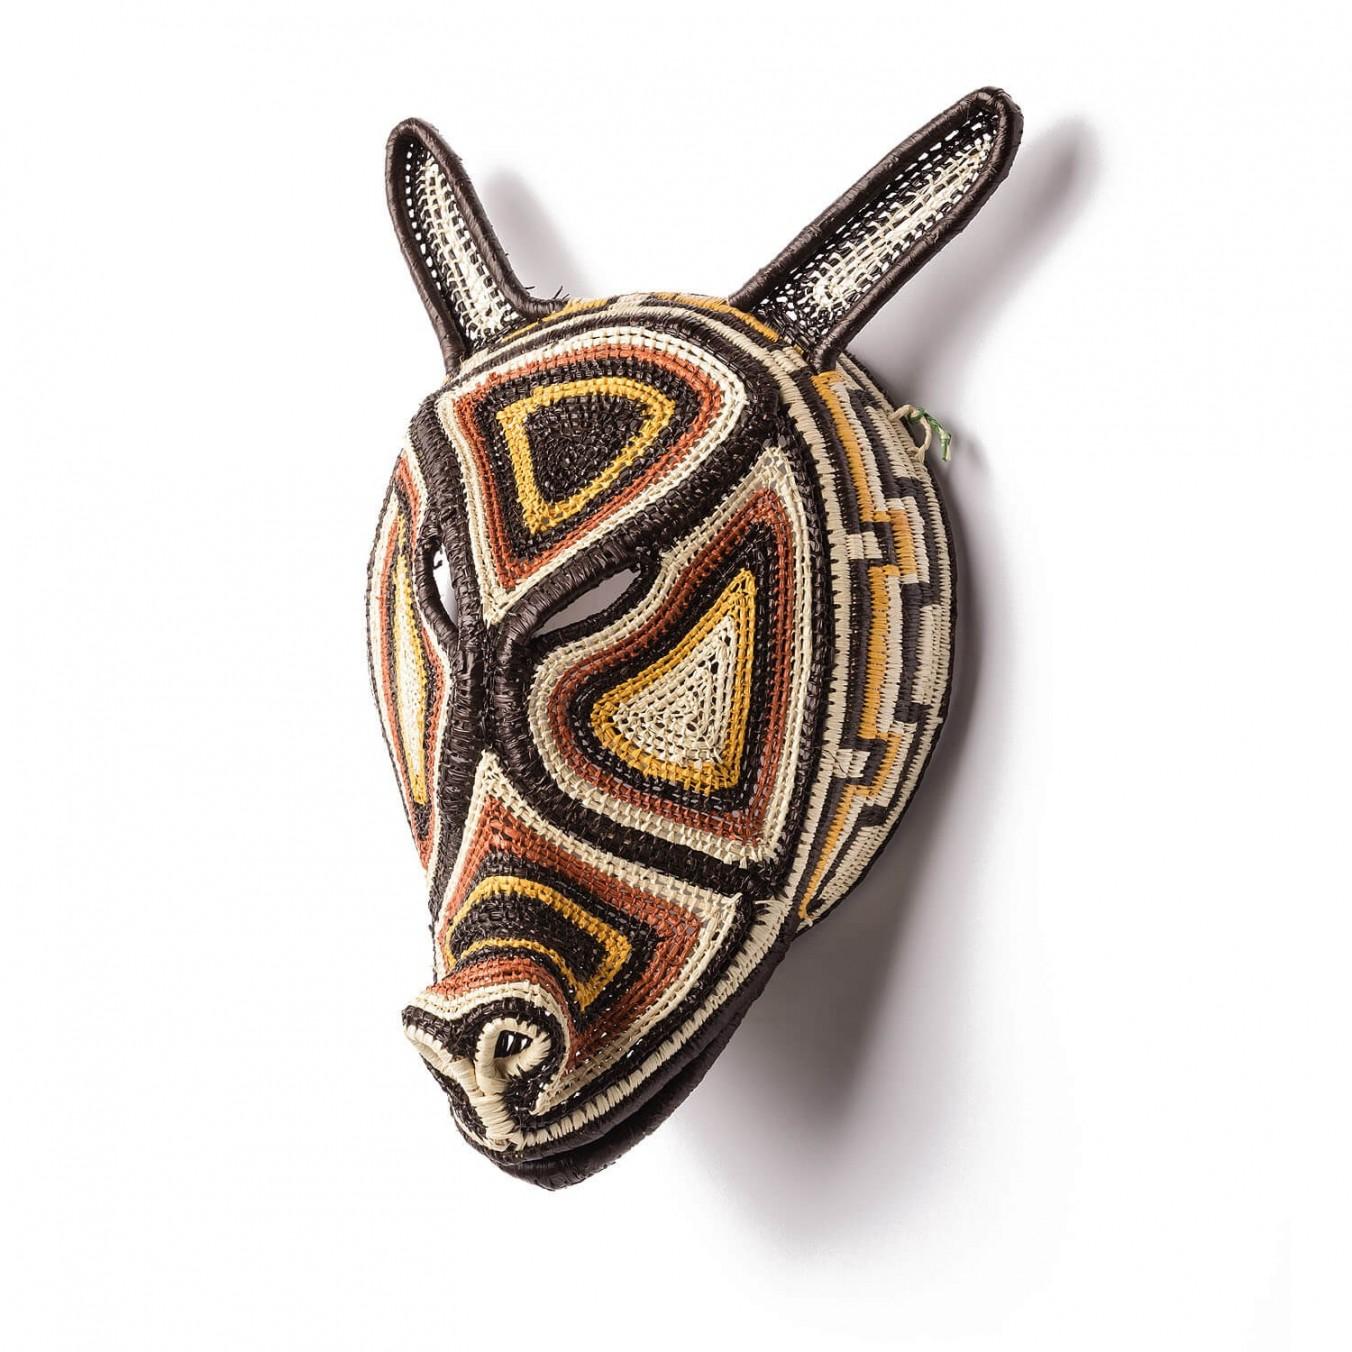 Dekorative handgewebte Maske aus Panama, Nemboro von Ethic&Tropic

Diese außergewöhnlichen Kunst- und Dekorationsgegenstände stammen aus dem schamanischen Glauben und den Ritualen der indigenen Embera-Stämme in Panama. Durch die Schamanen kommen